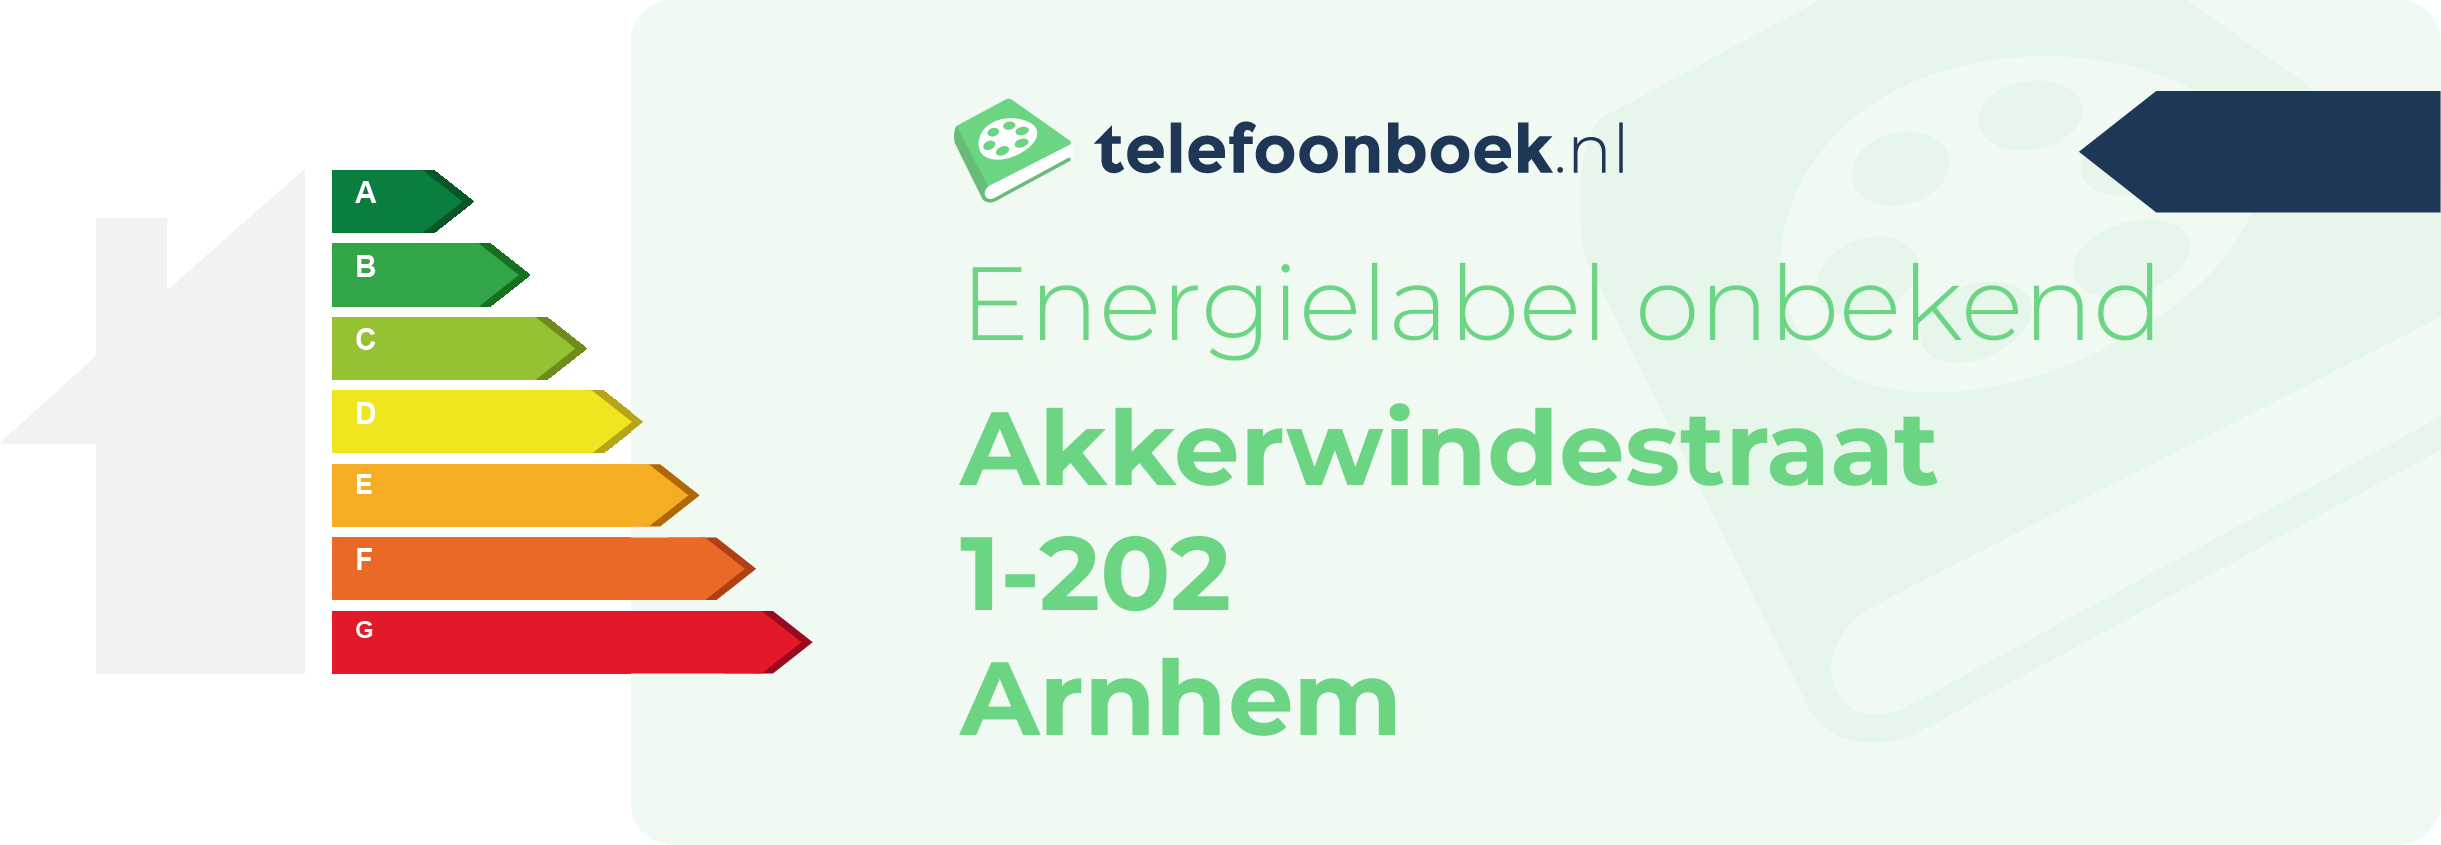 Energielabel Akkerwindestraat 1-202 Arnhem